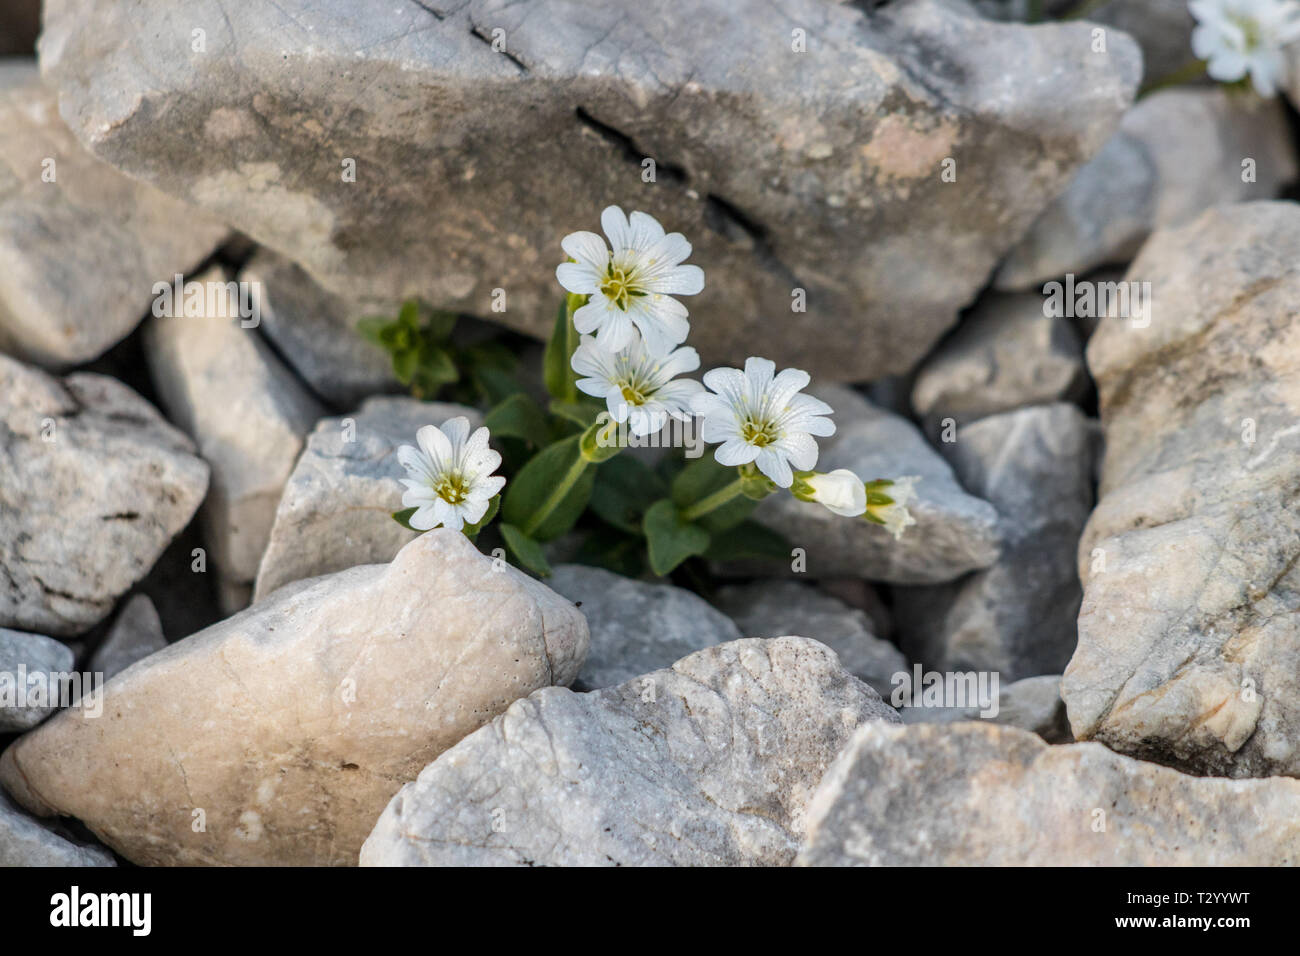 Cerastium carinthiacum in the mountains Stock Photo